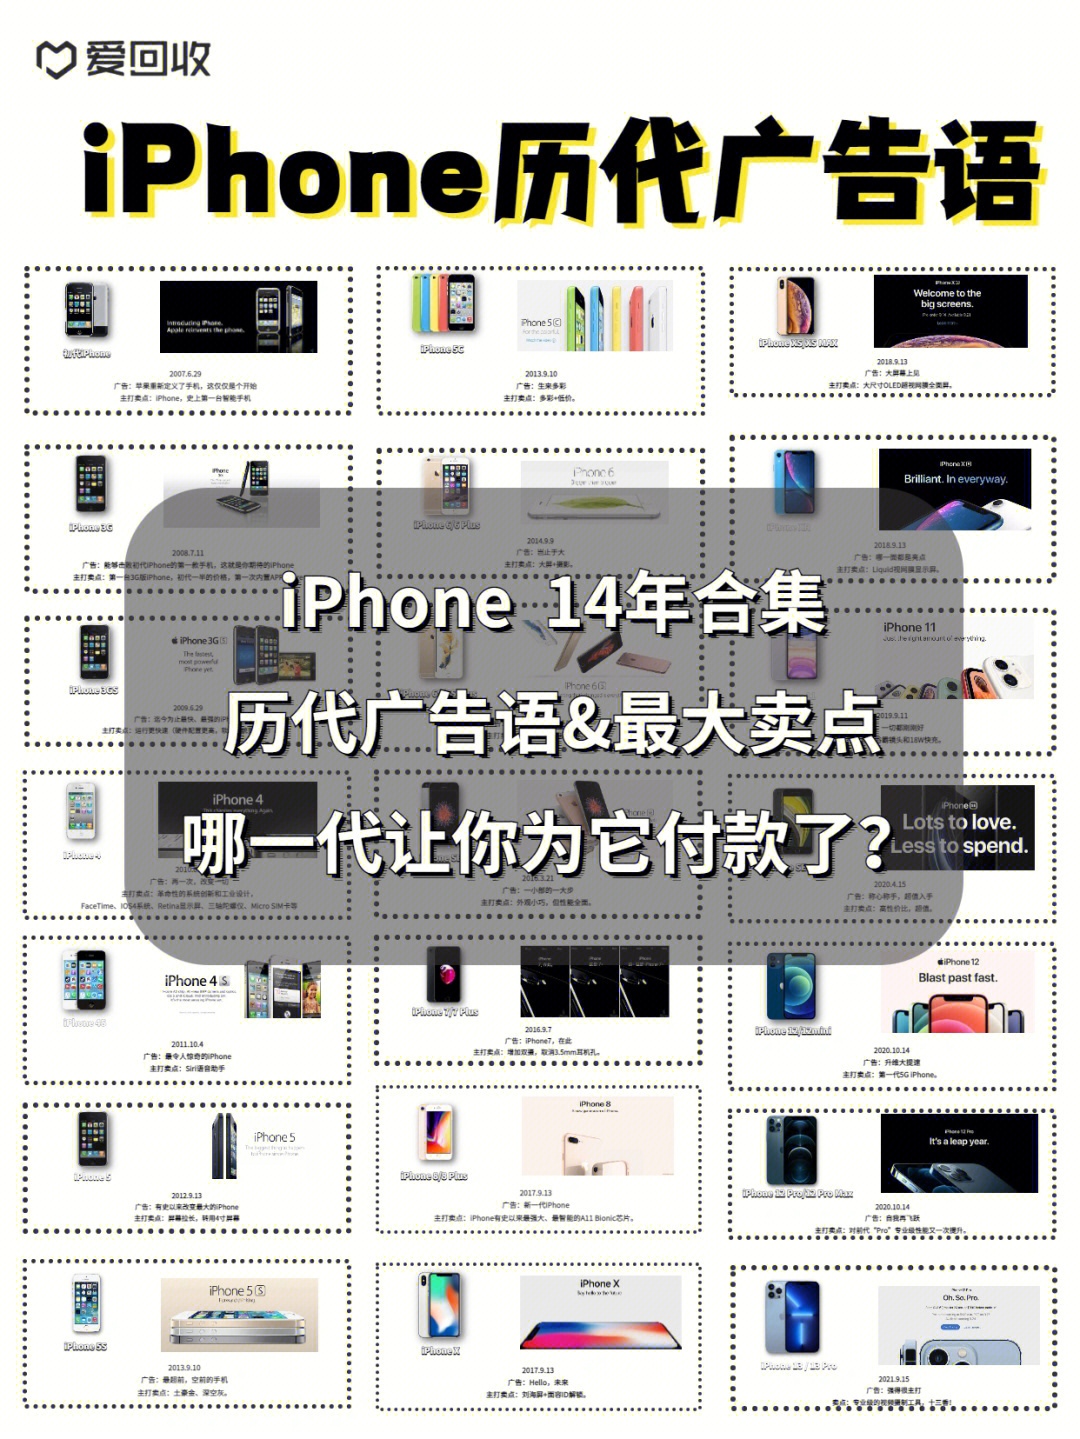 iphone经典广告语图片